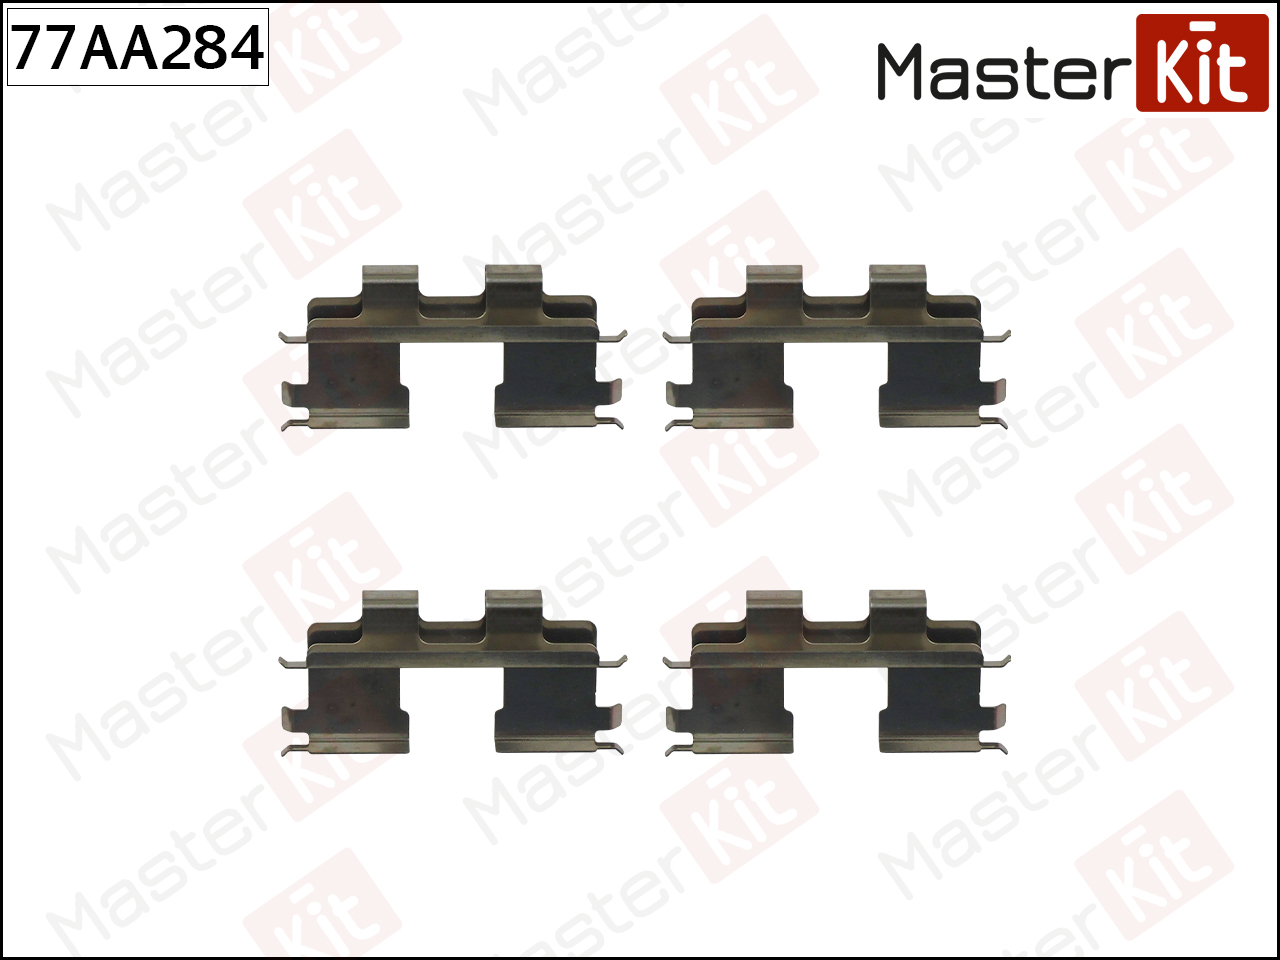 MasterKit 77AA284 комплект установочный тормозных колодок Getz (Гетц) 09-02-06-09, tucson 08-04-03-10, sona